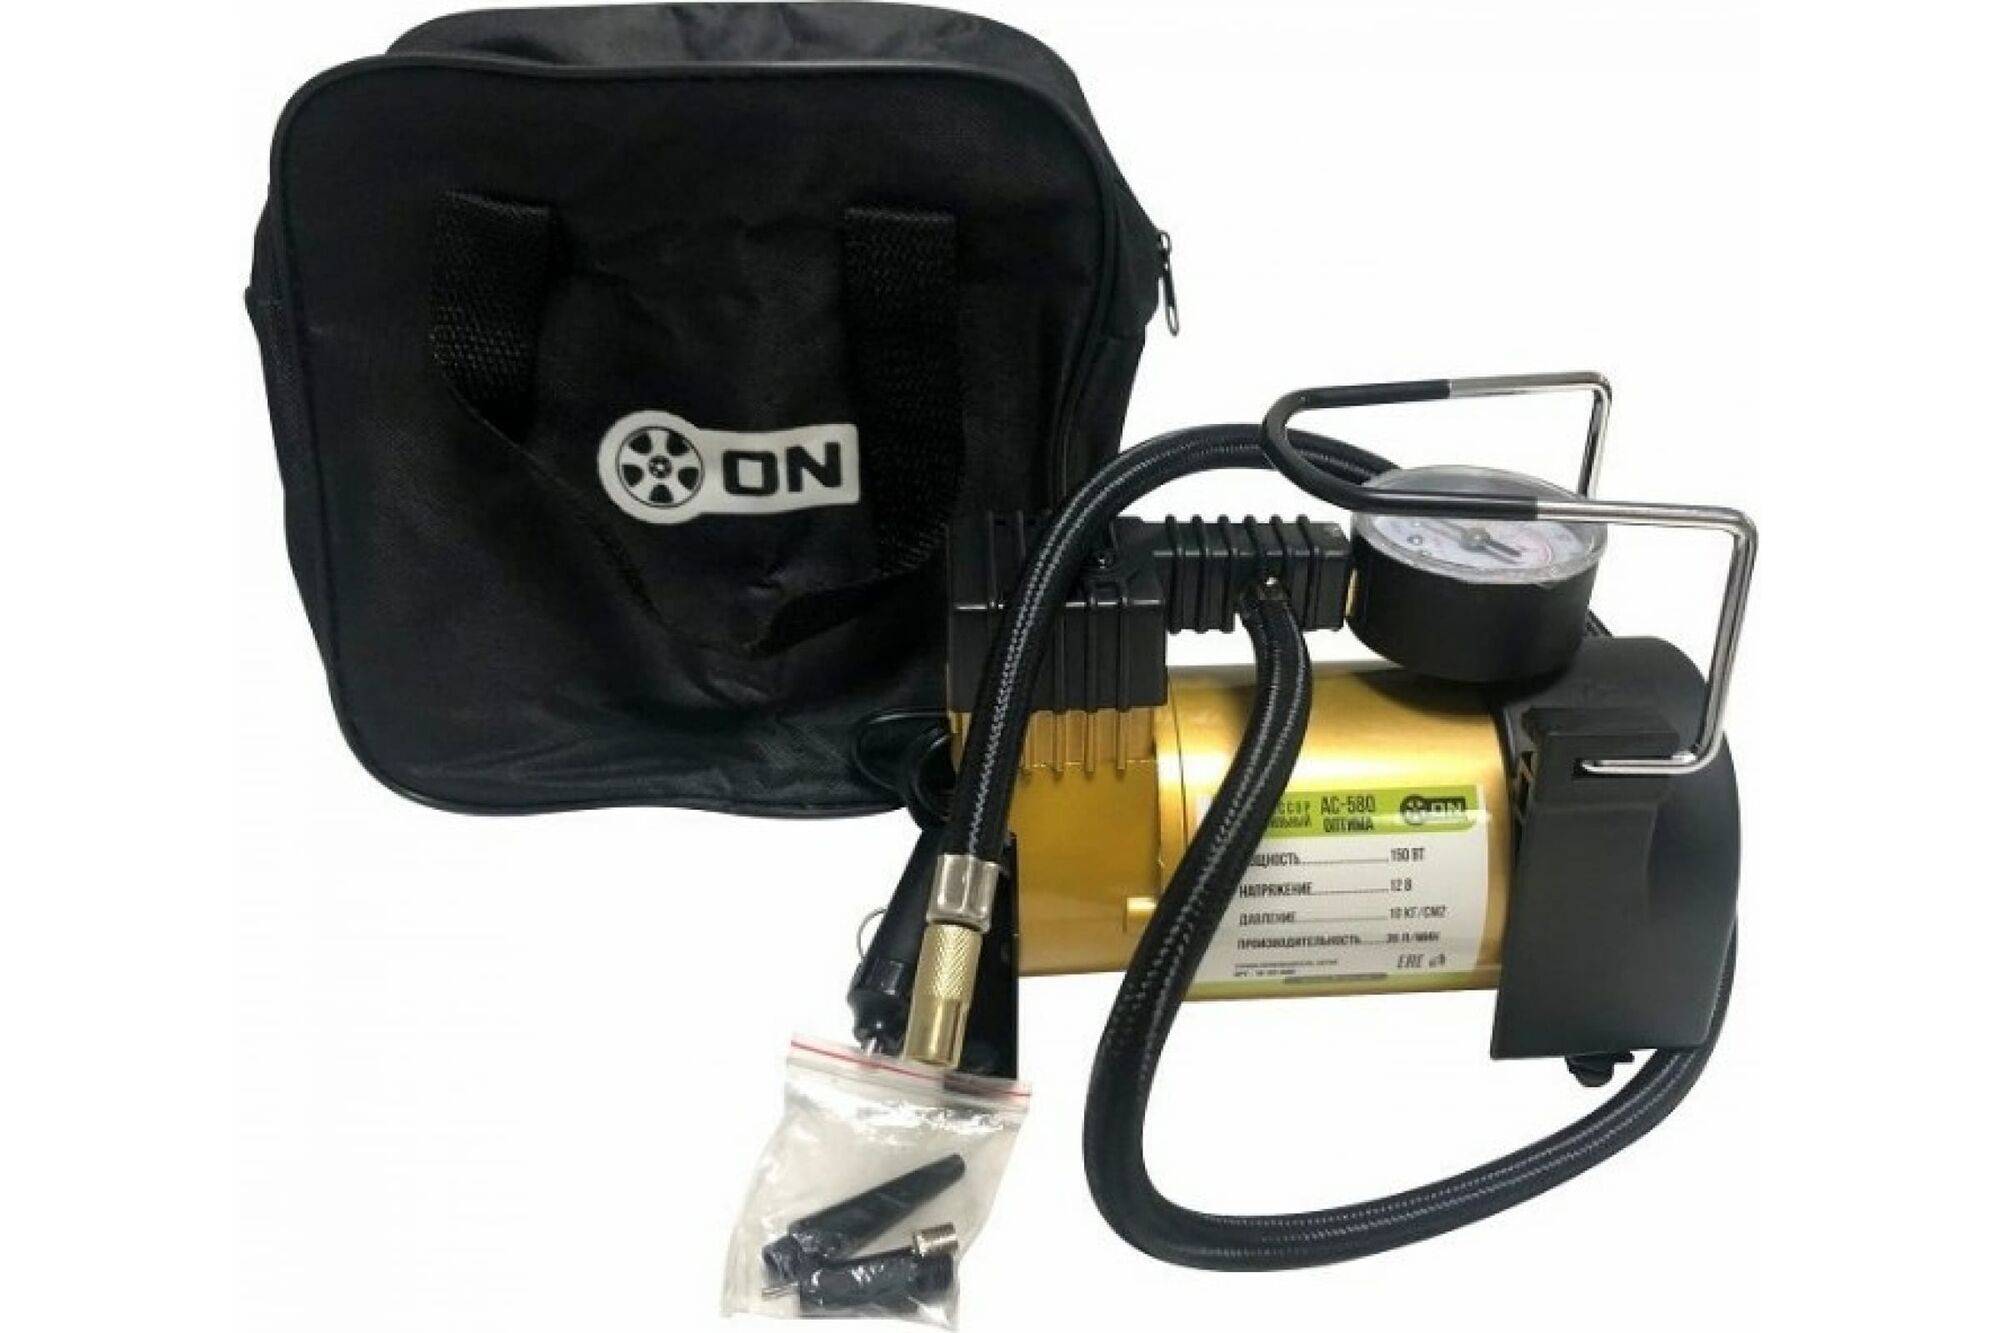 Автомобильный компрессор ON АС-580, тип Торнадо, в сумке, 40лмин, 160 Вт, 12 В. 16-03-001 Tornado